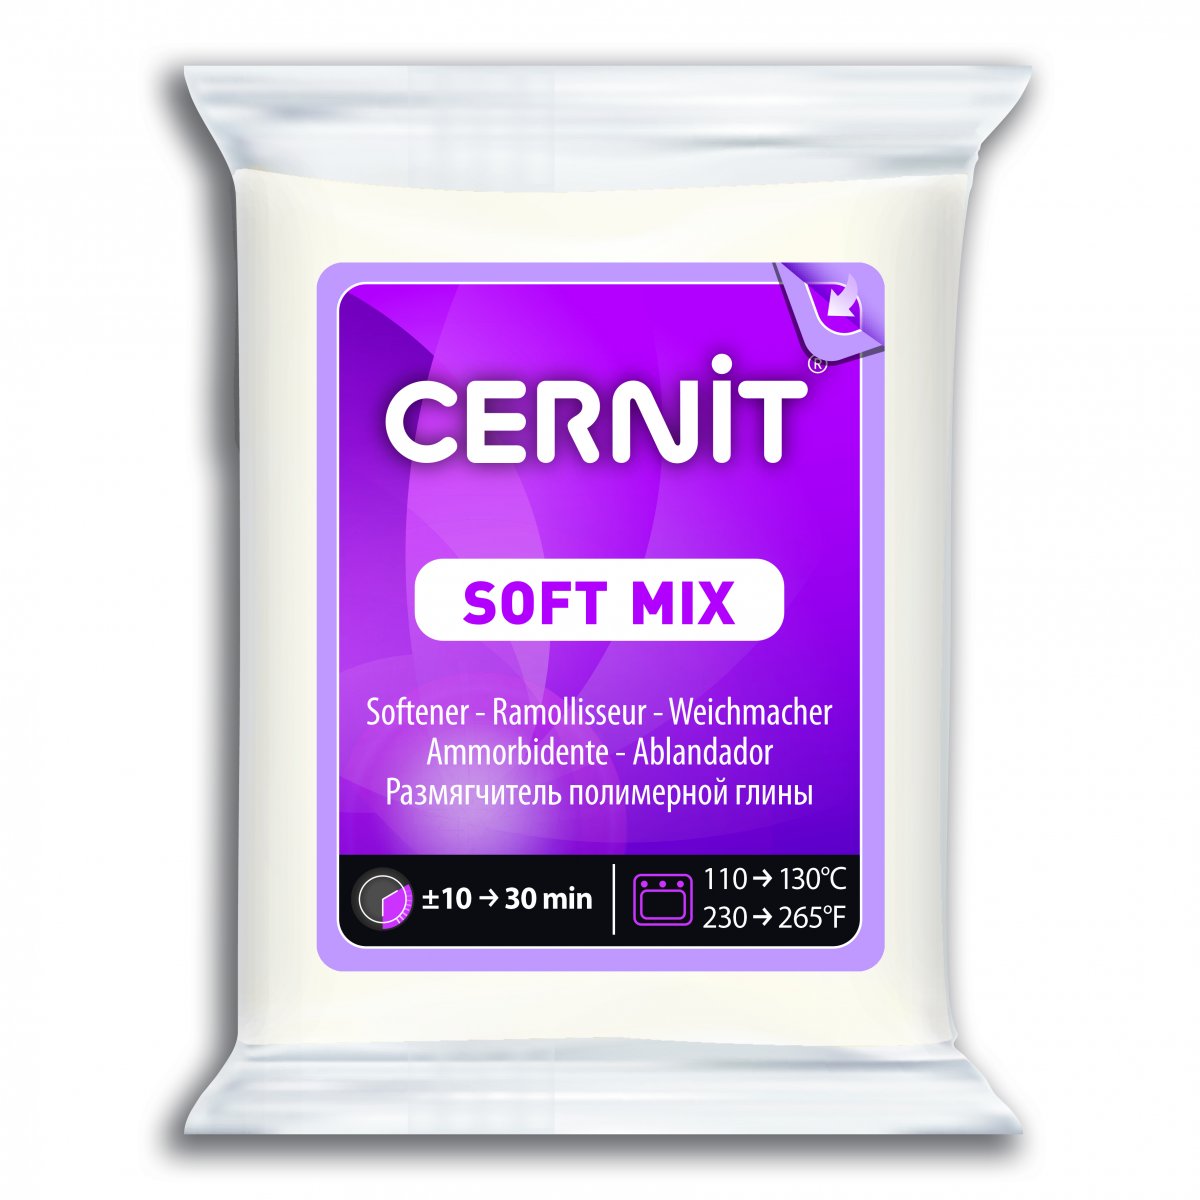 Cernit Soft Mix 56g - Click Image to Close